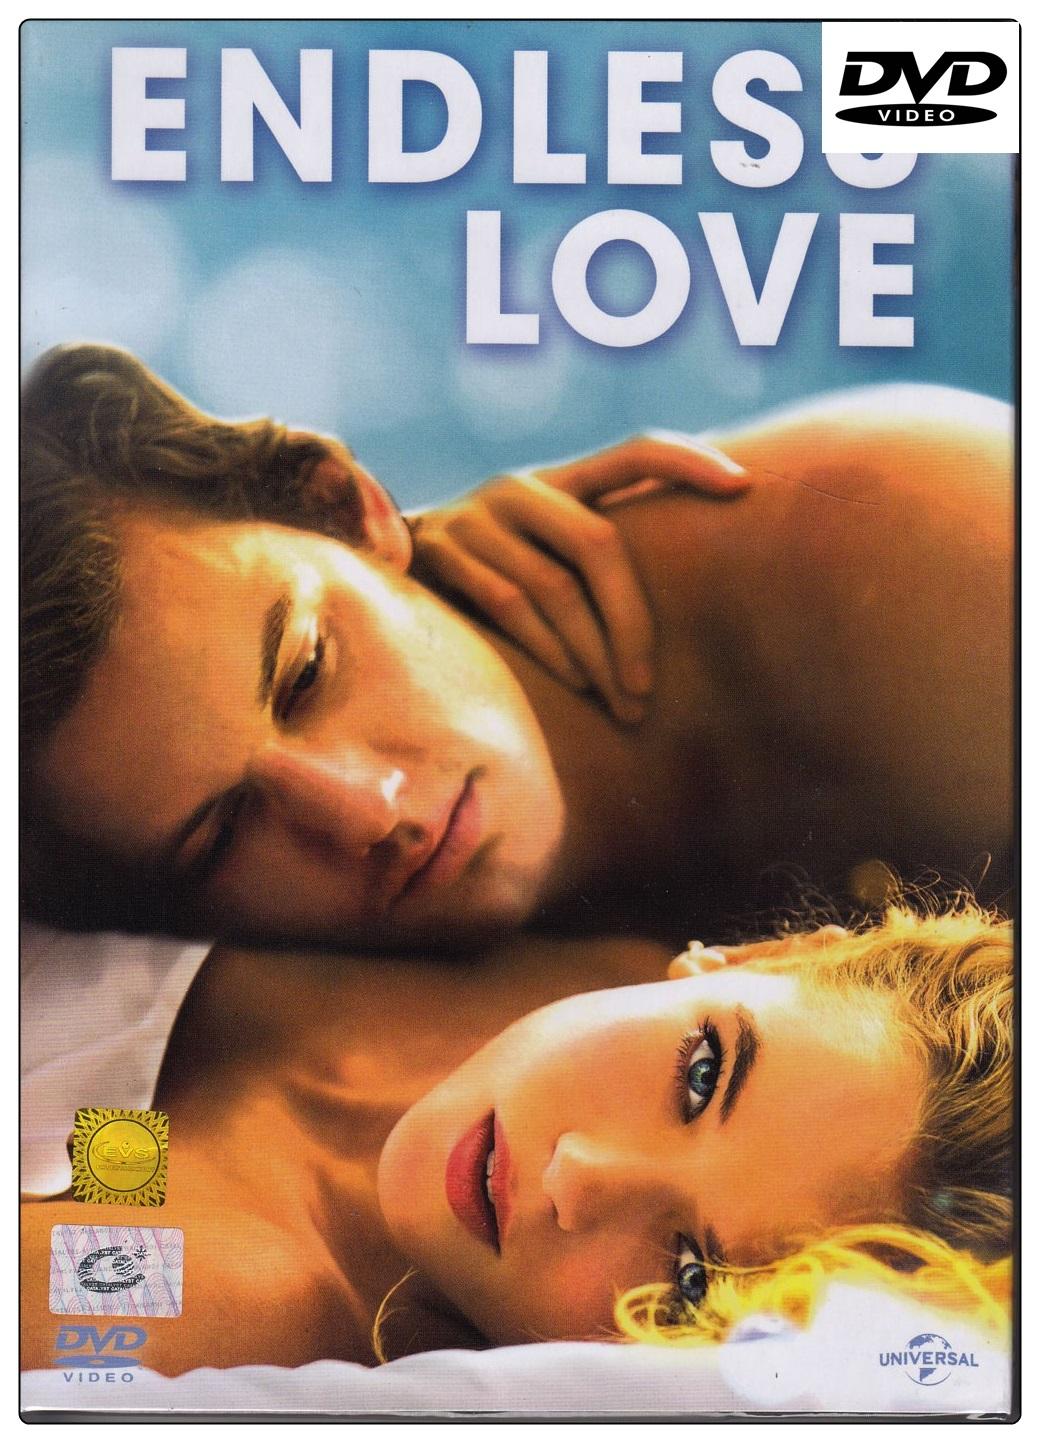 Endless Love (2014) รักนิรันดร์ (DVD ดีวีดี)